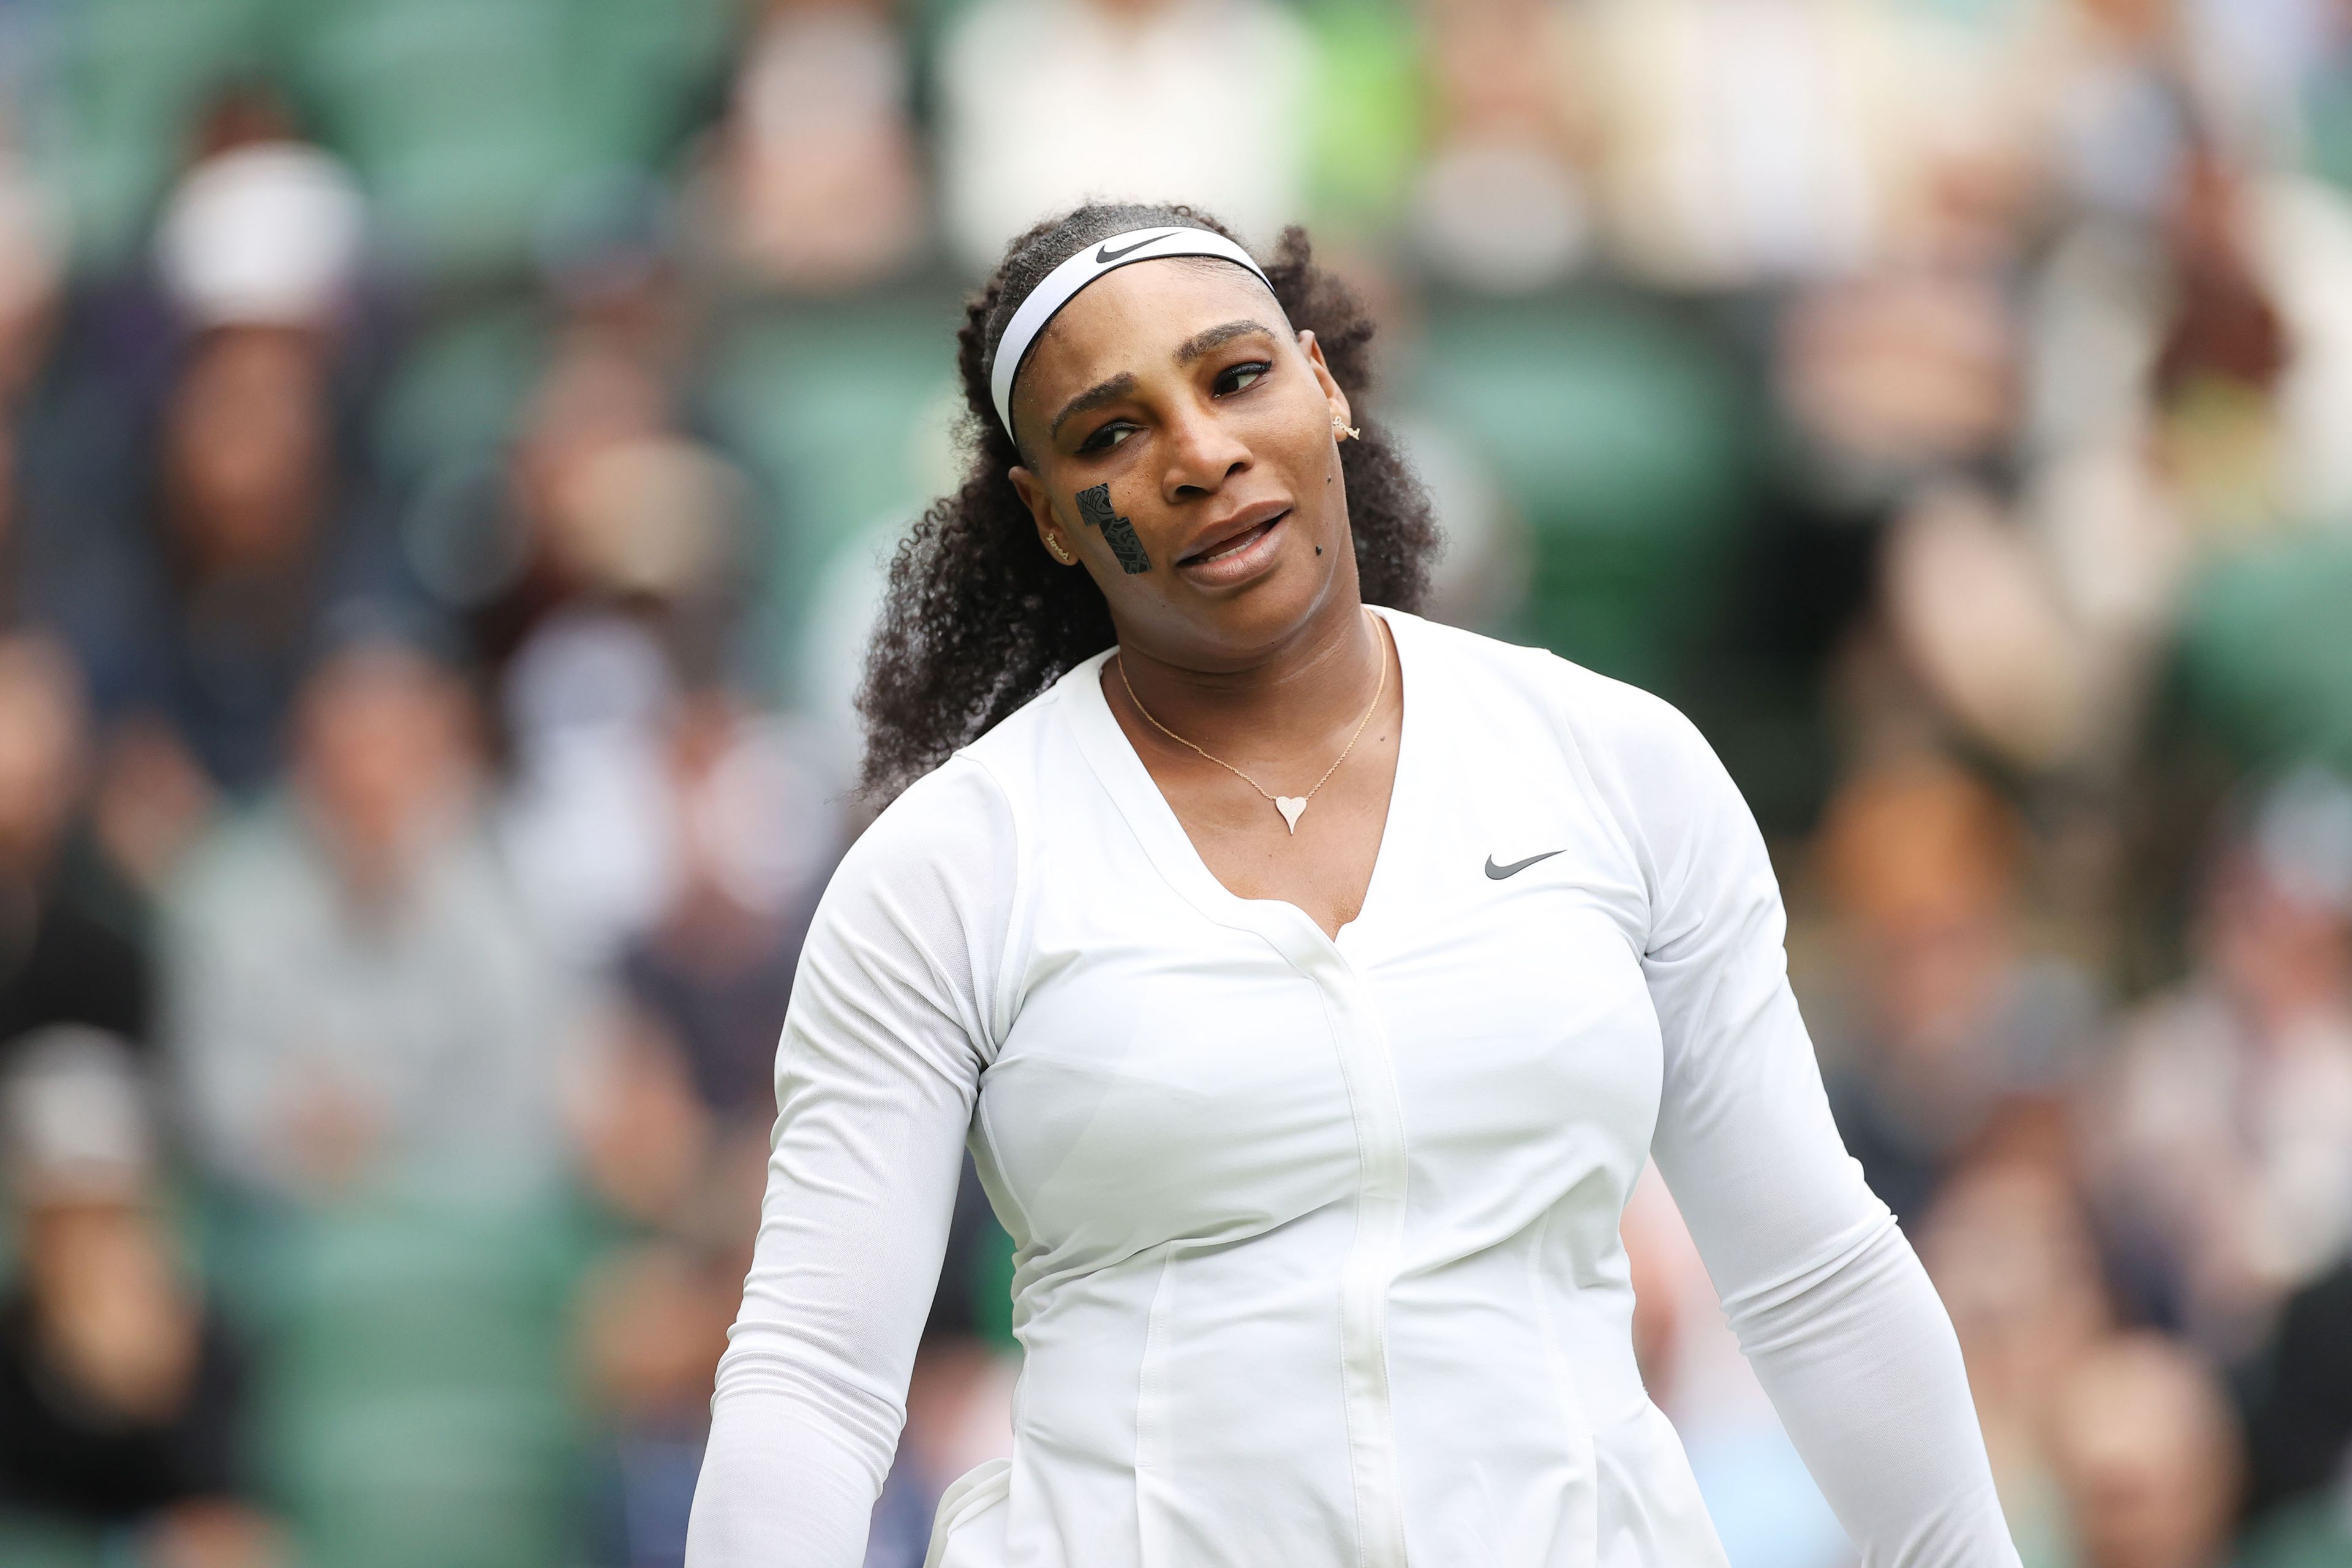 Elképzelhető, hogy Serena Williamst többé már nem láthatjuk Wimbledonban, és Grand Slam-versenyen... / Fotó: Northfoto